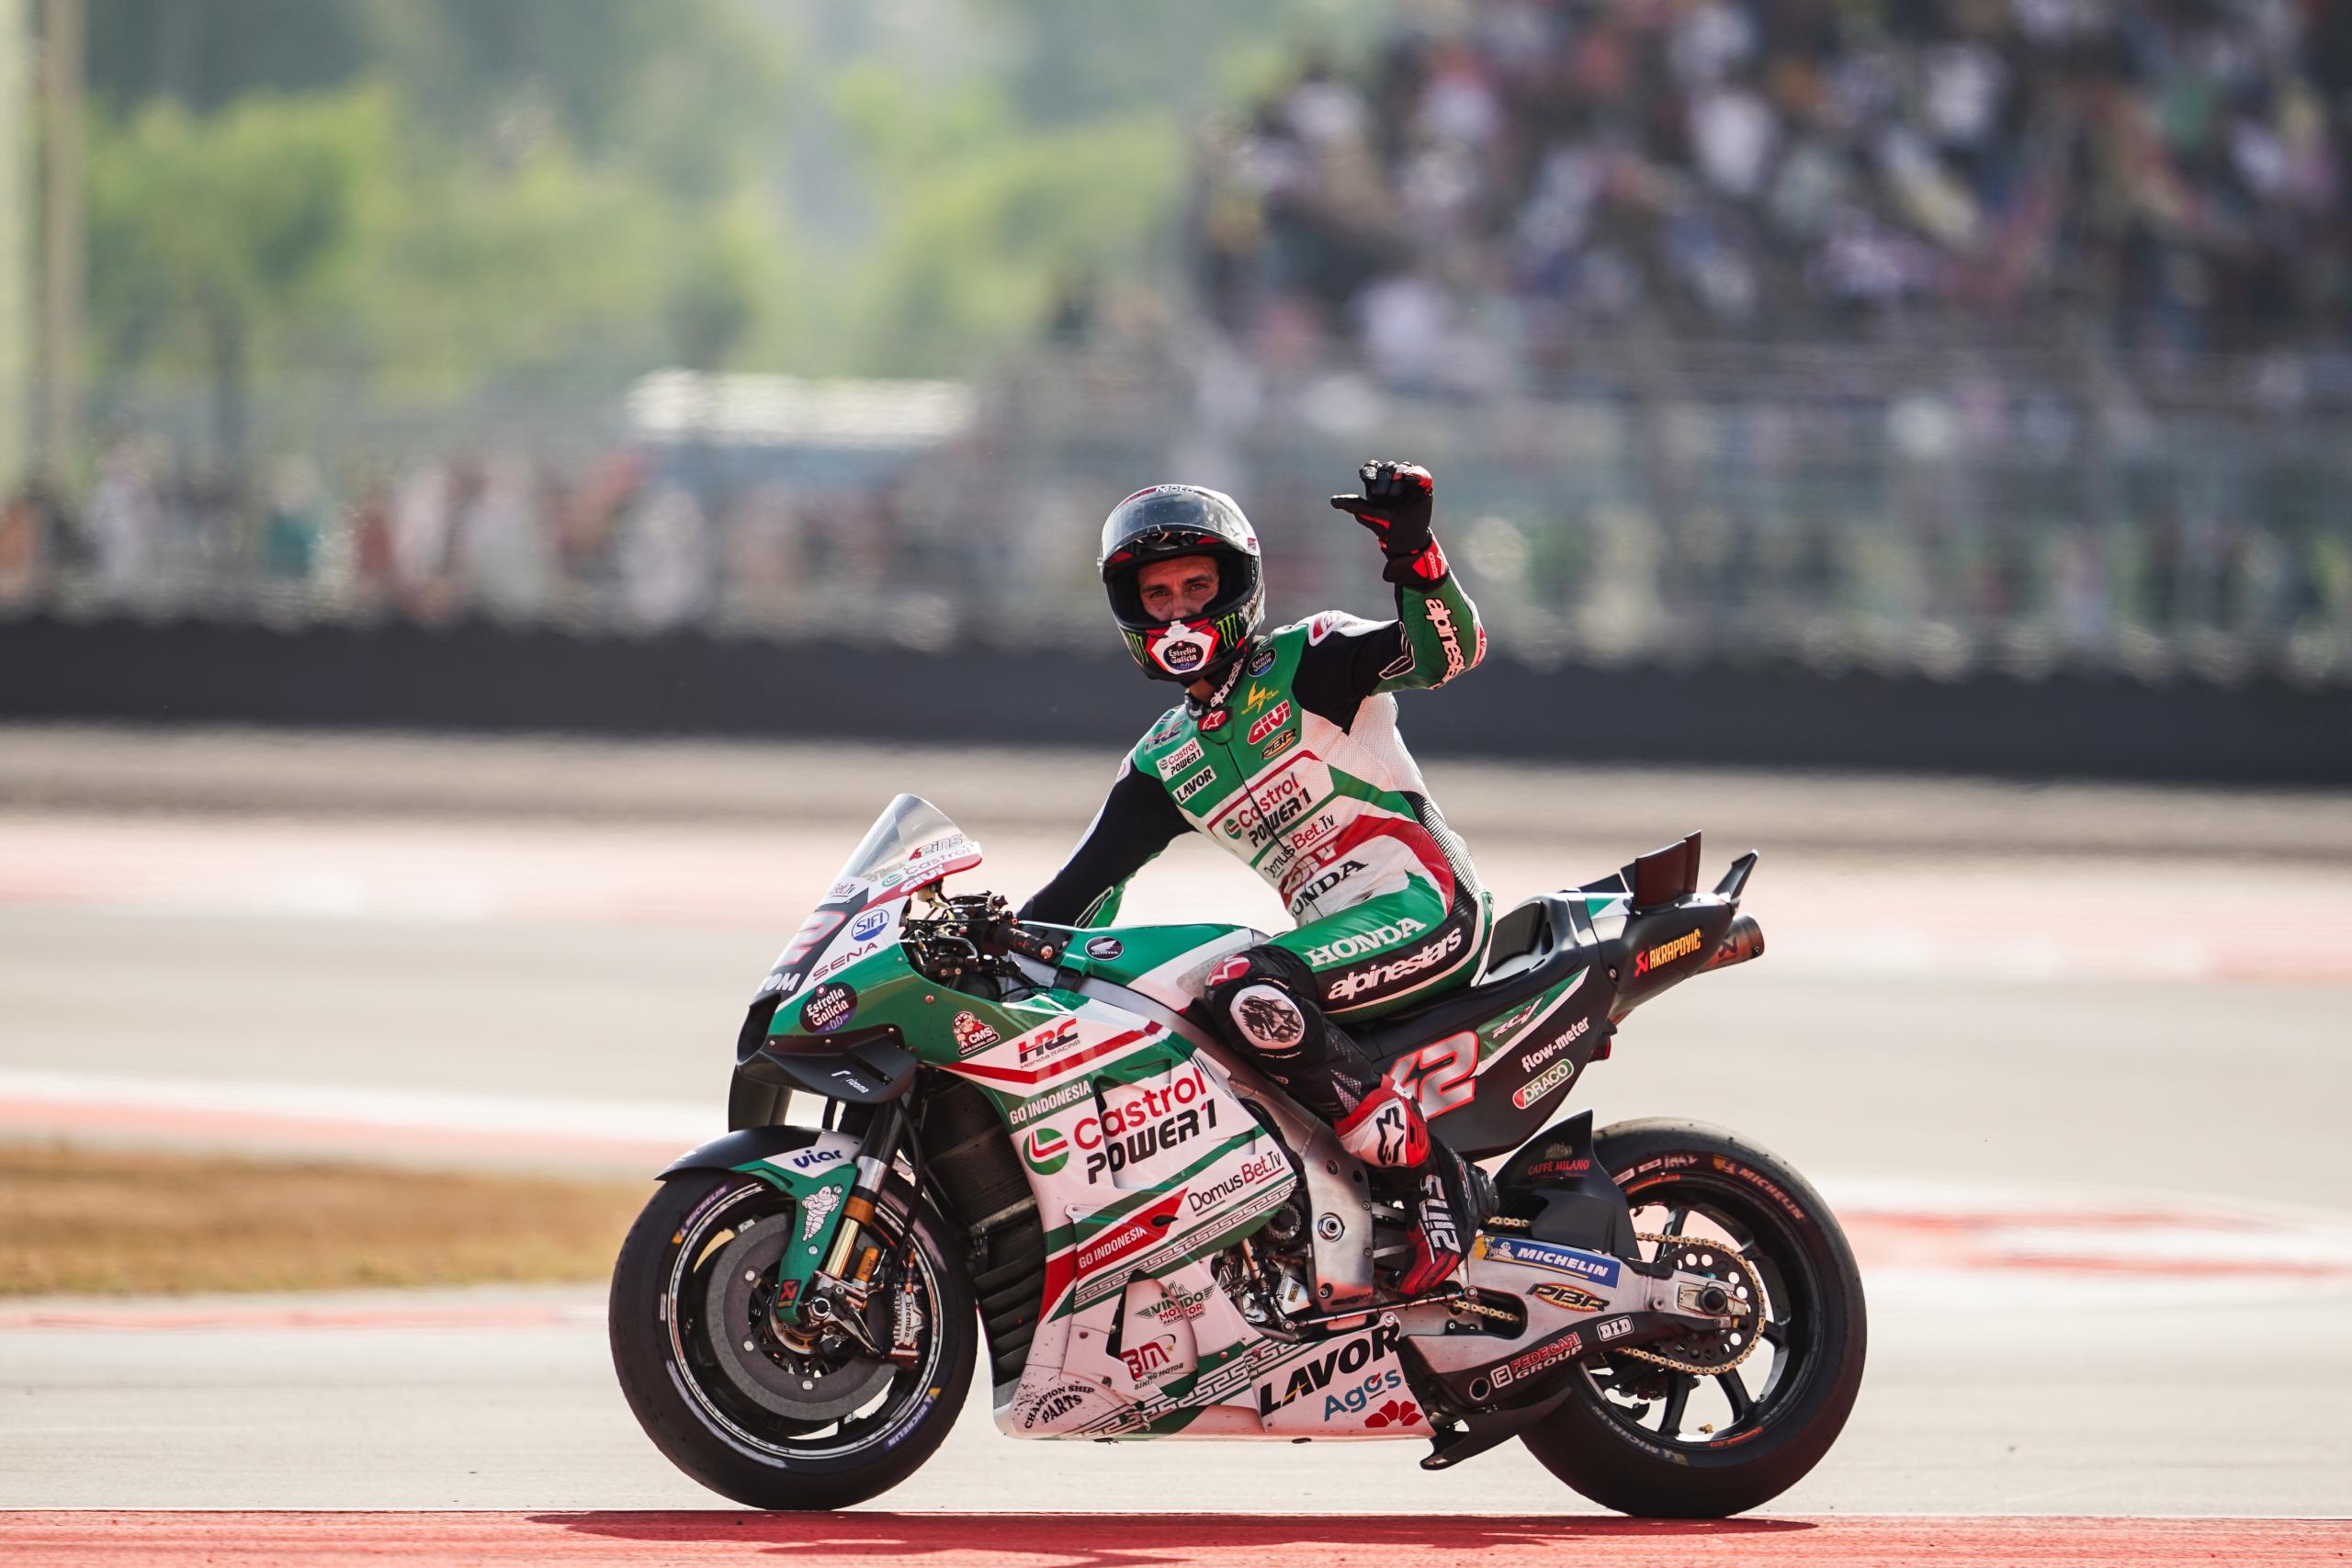 “Posisi ke-9 di Indonesia serasa naik podium”